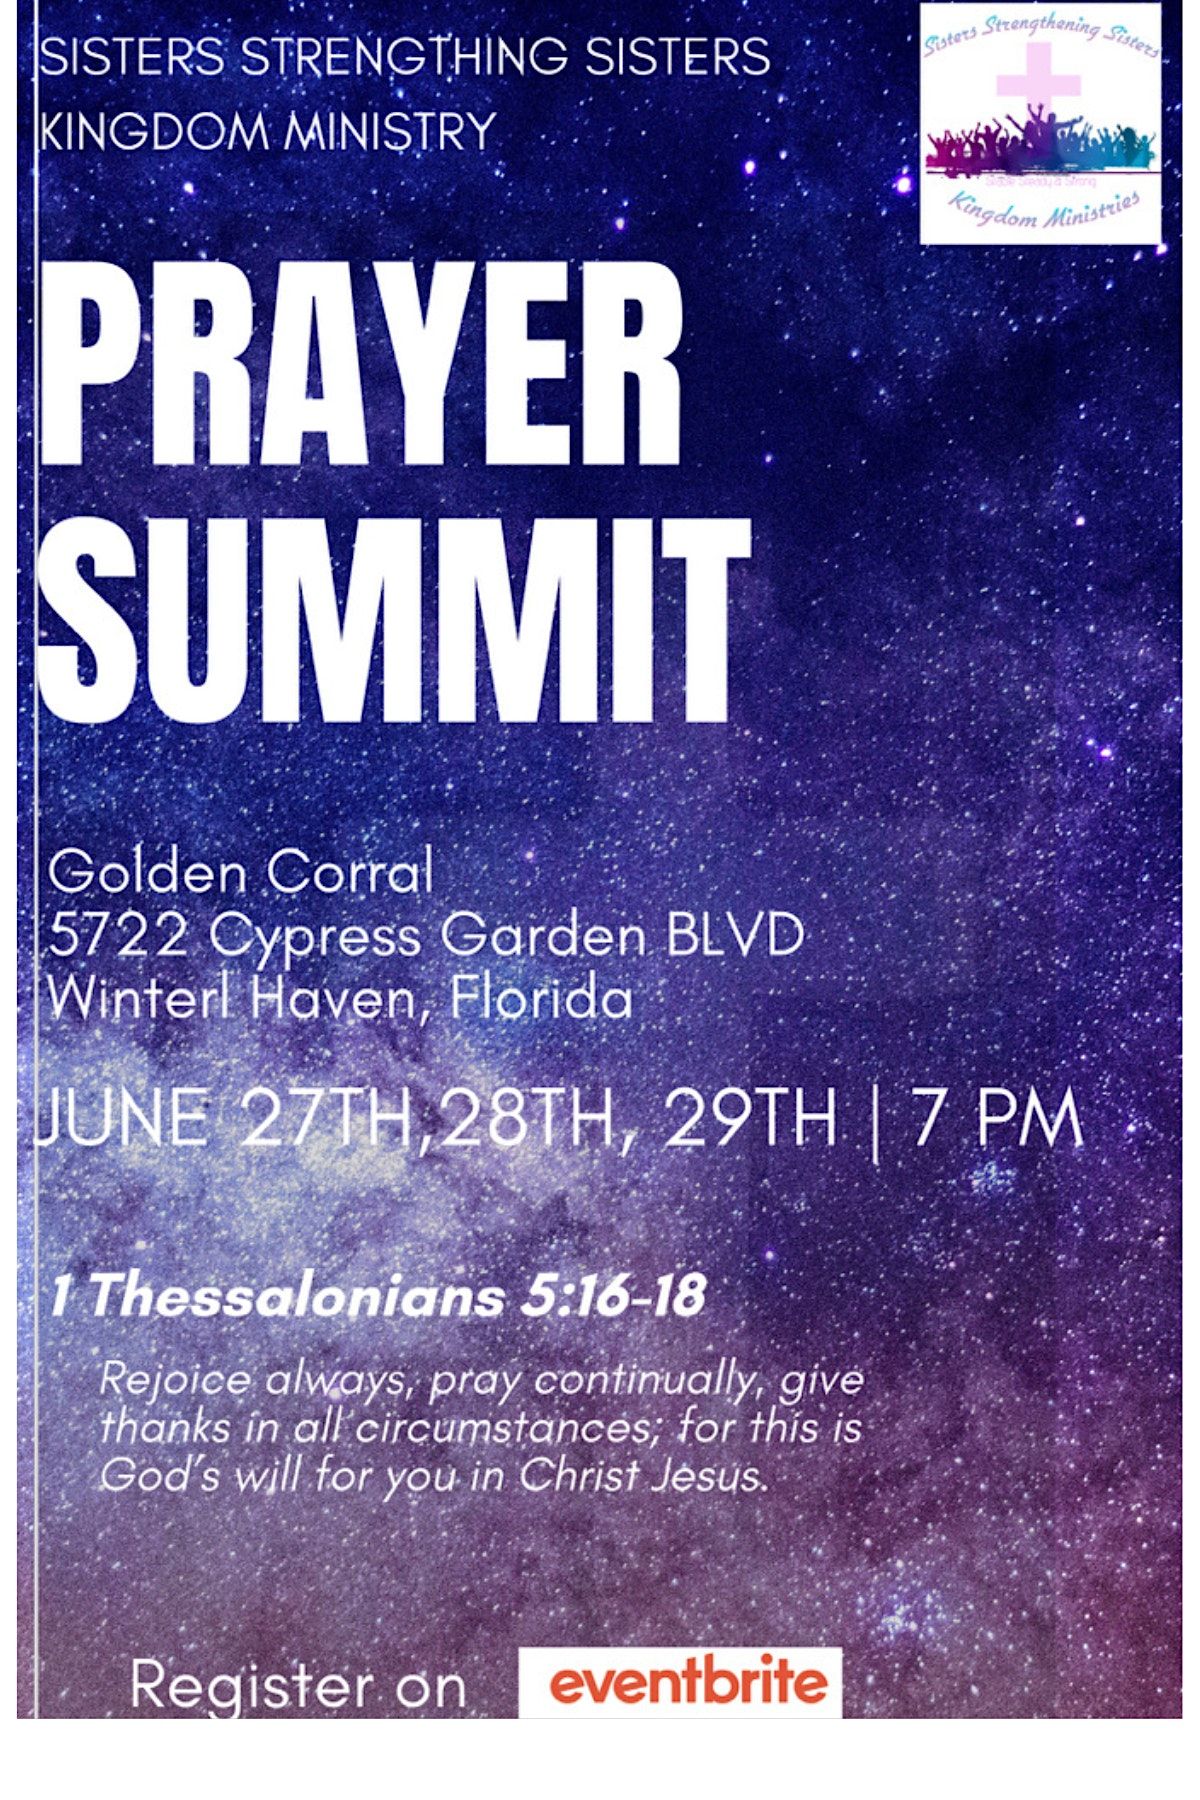 Prayer Summit Day1